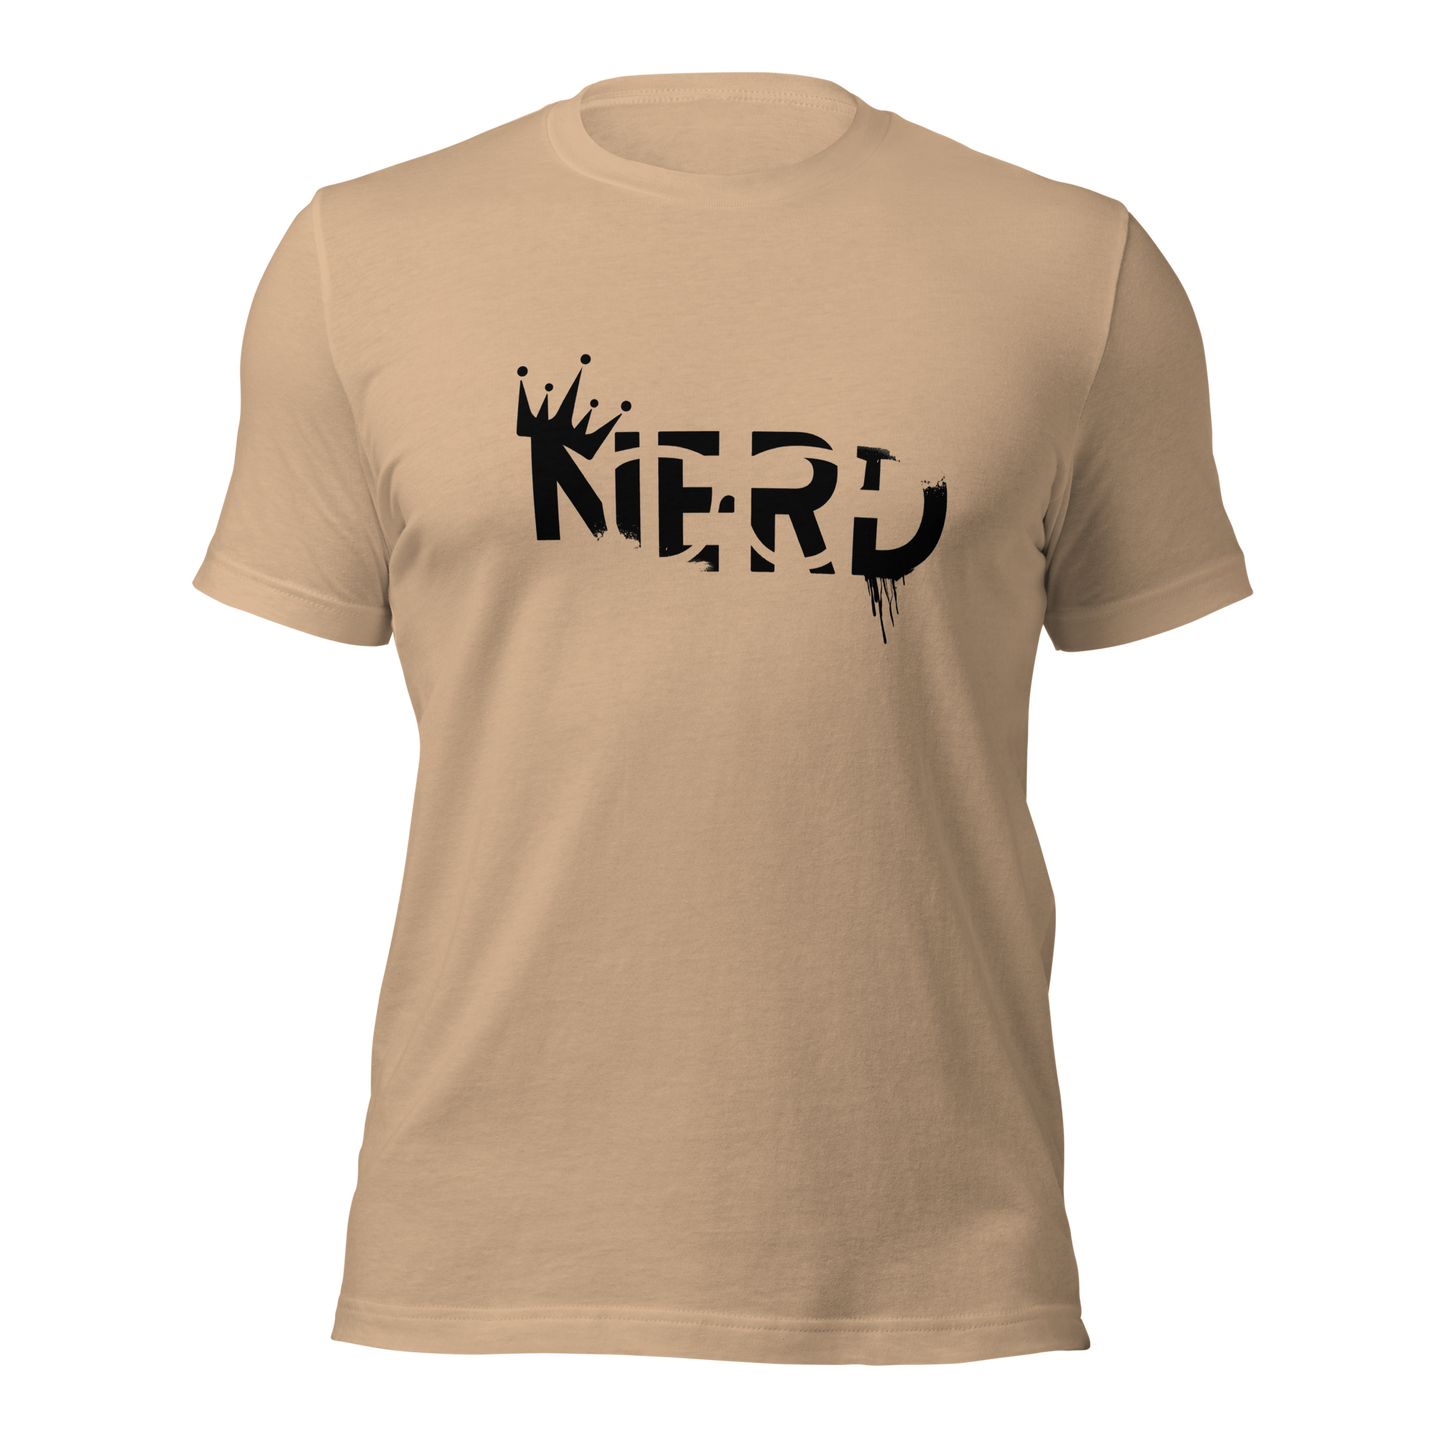 Nerd t-shirt